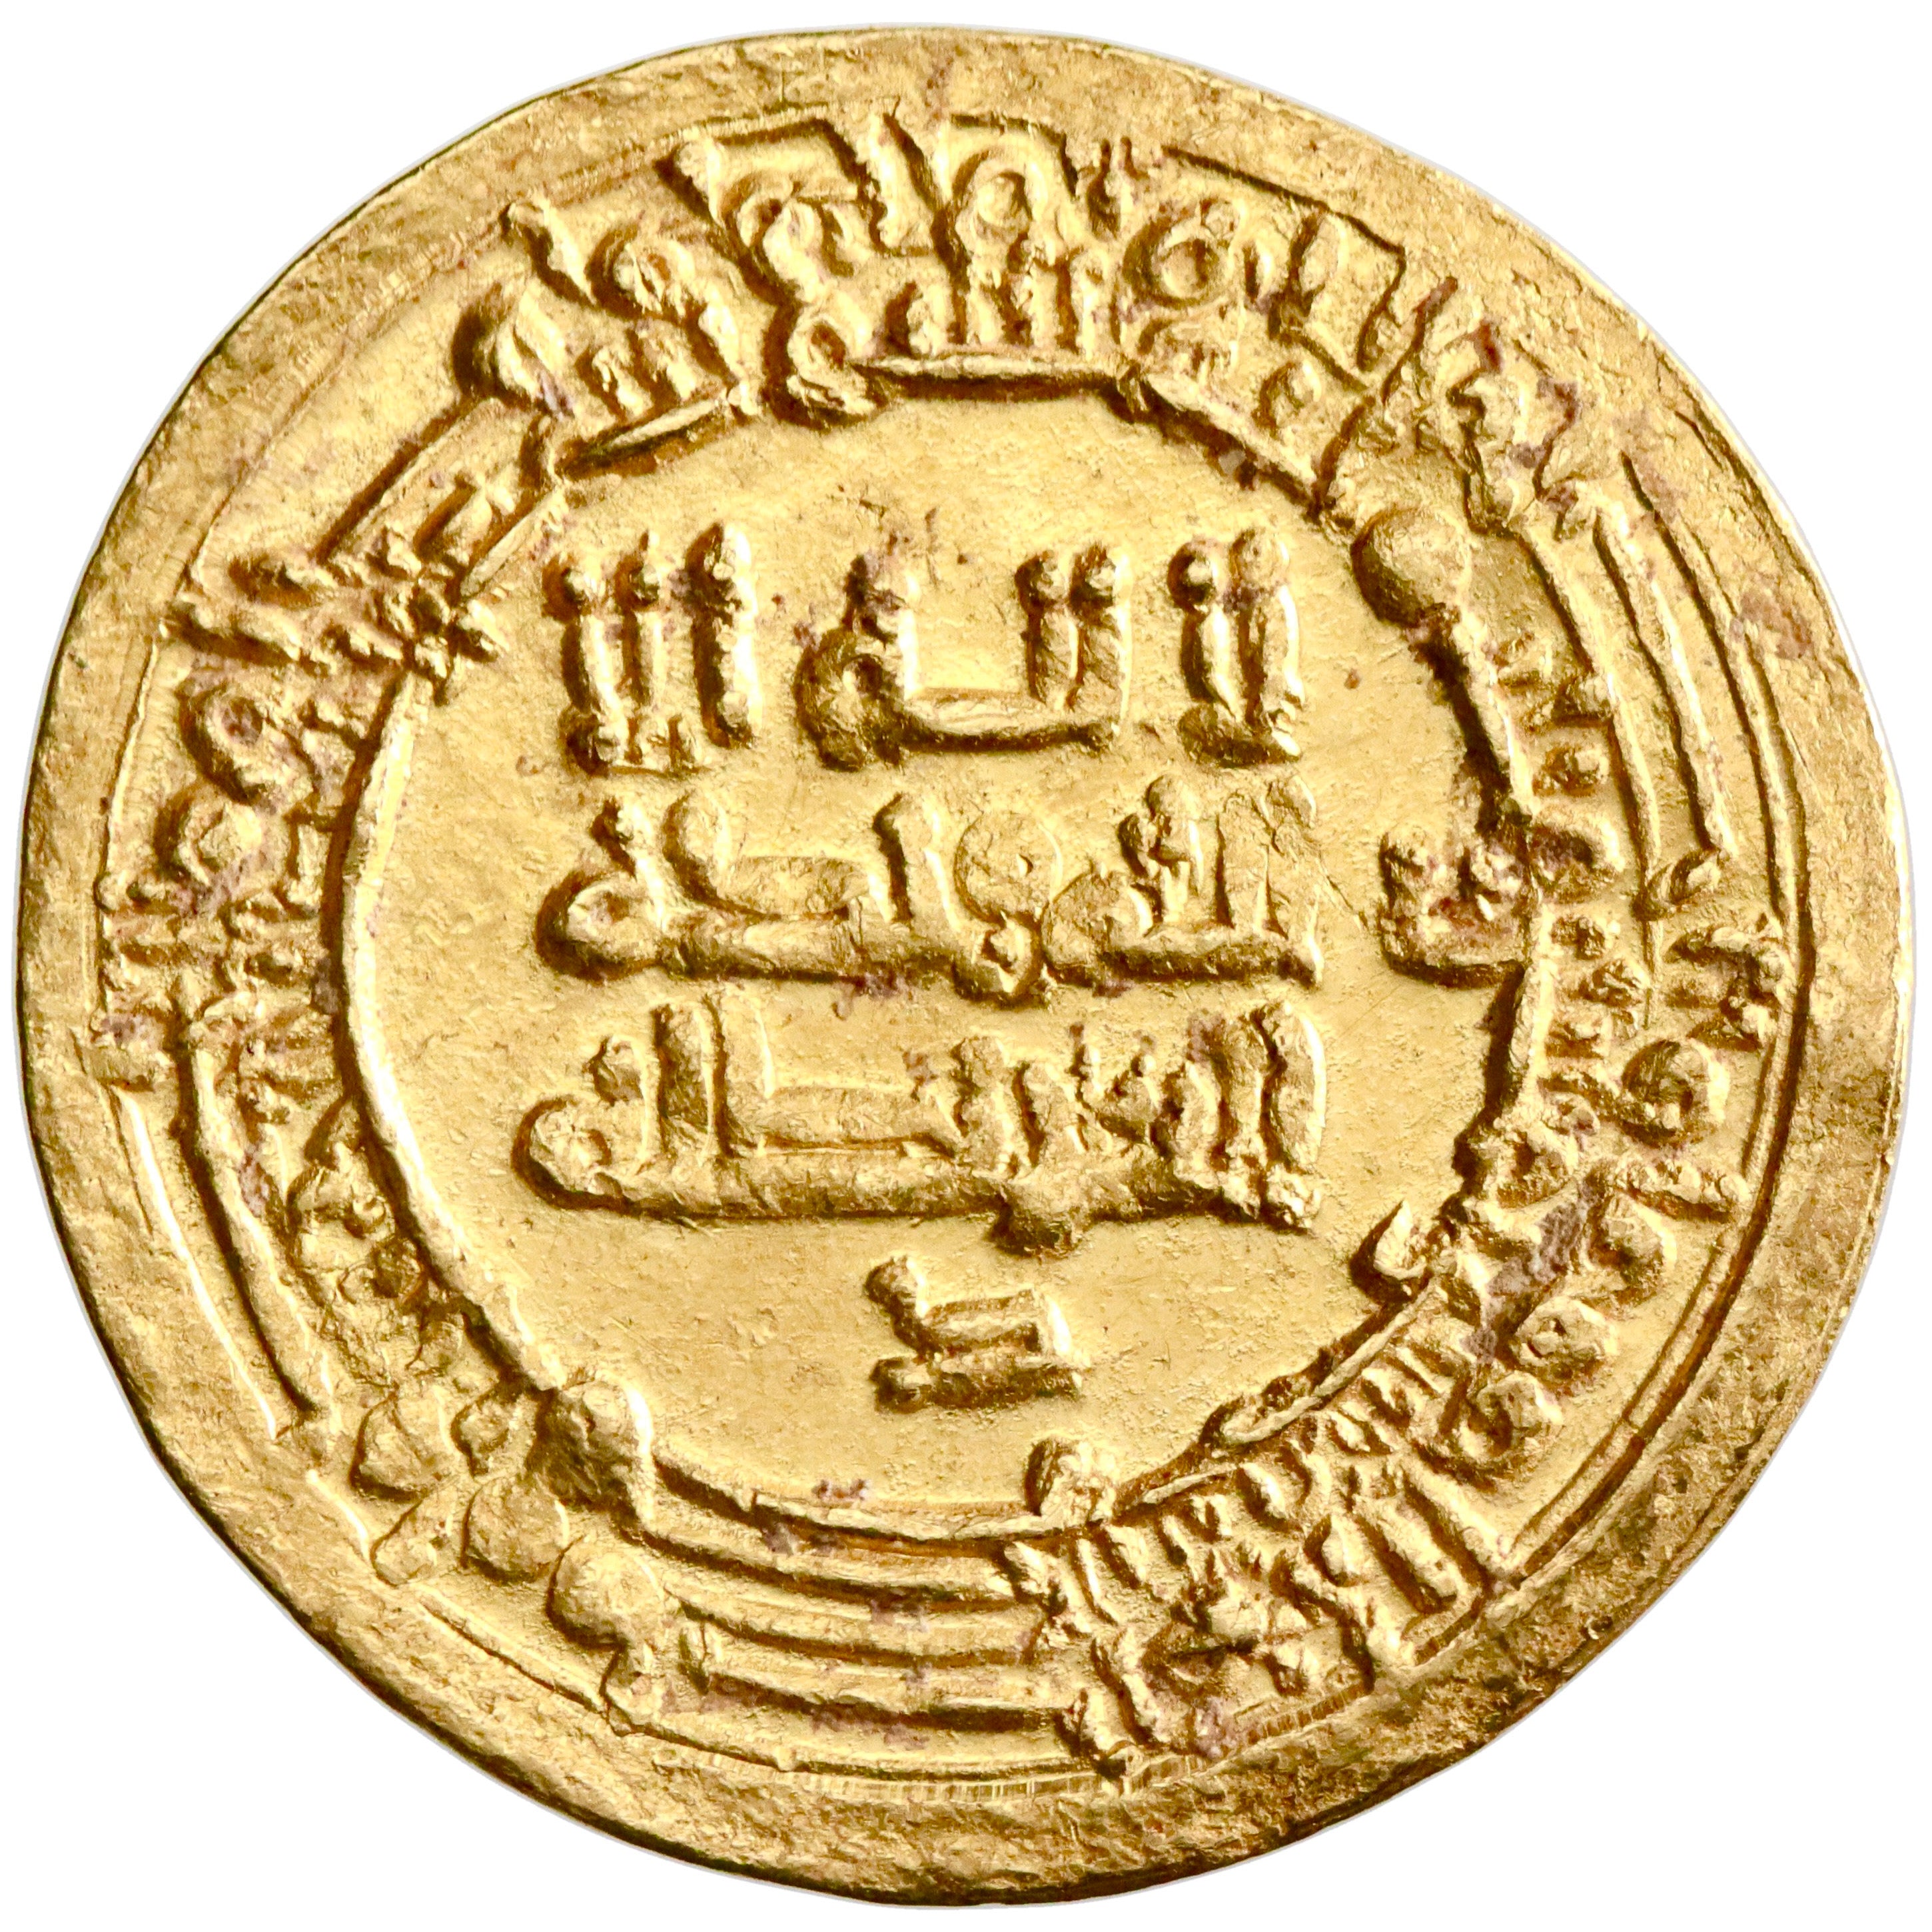 Ikhshidid, Abu'l-Misk Kafur, gold dinar, Misr (Egypt) mint, AH 356, citing al-Muti'